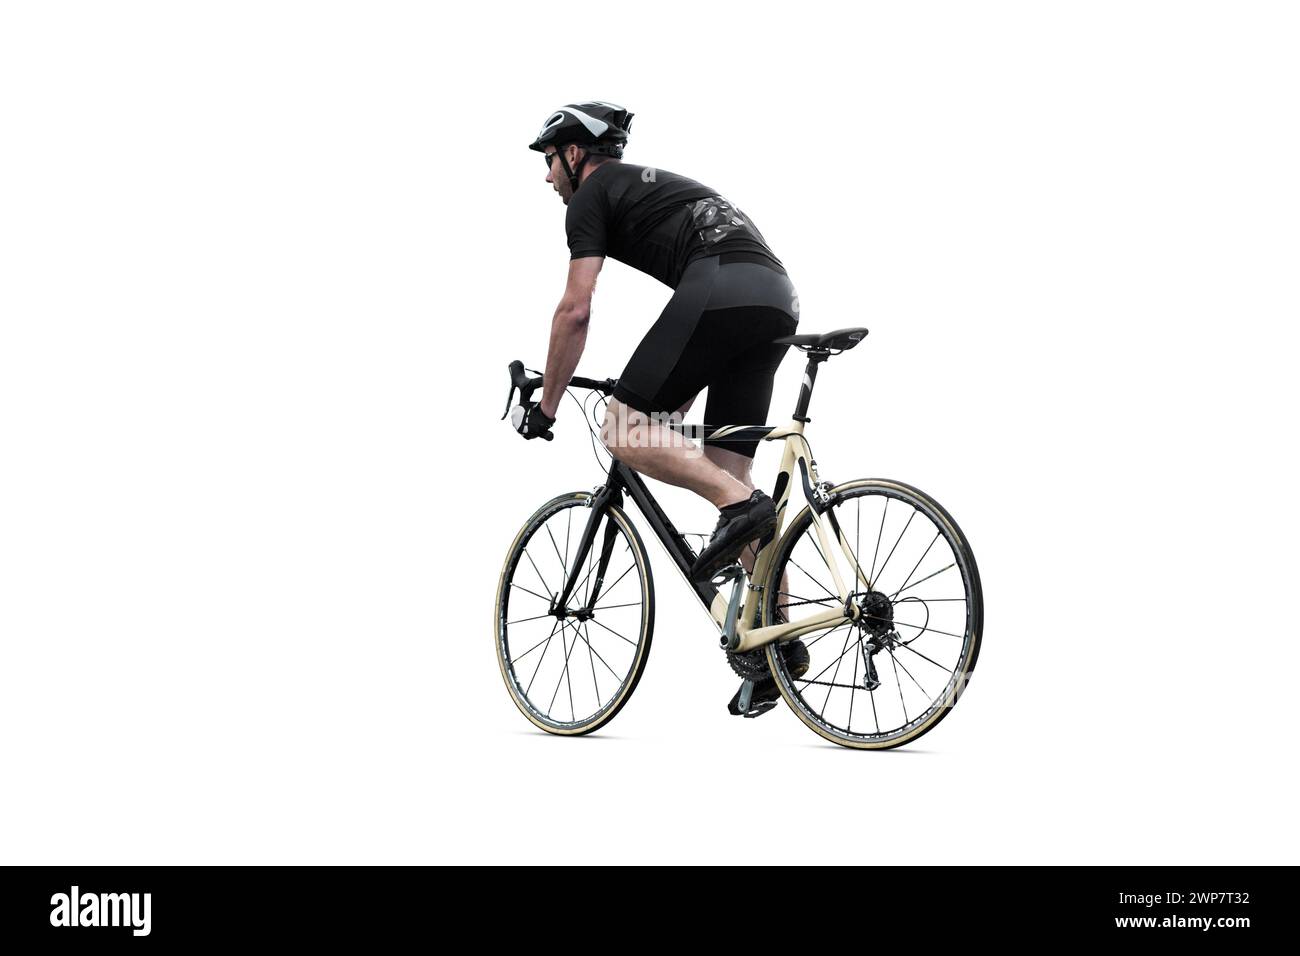 Cycliste conduisant un vélo de route - isolé de l'arrière-plan Banque D'Images